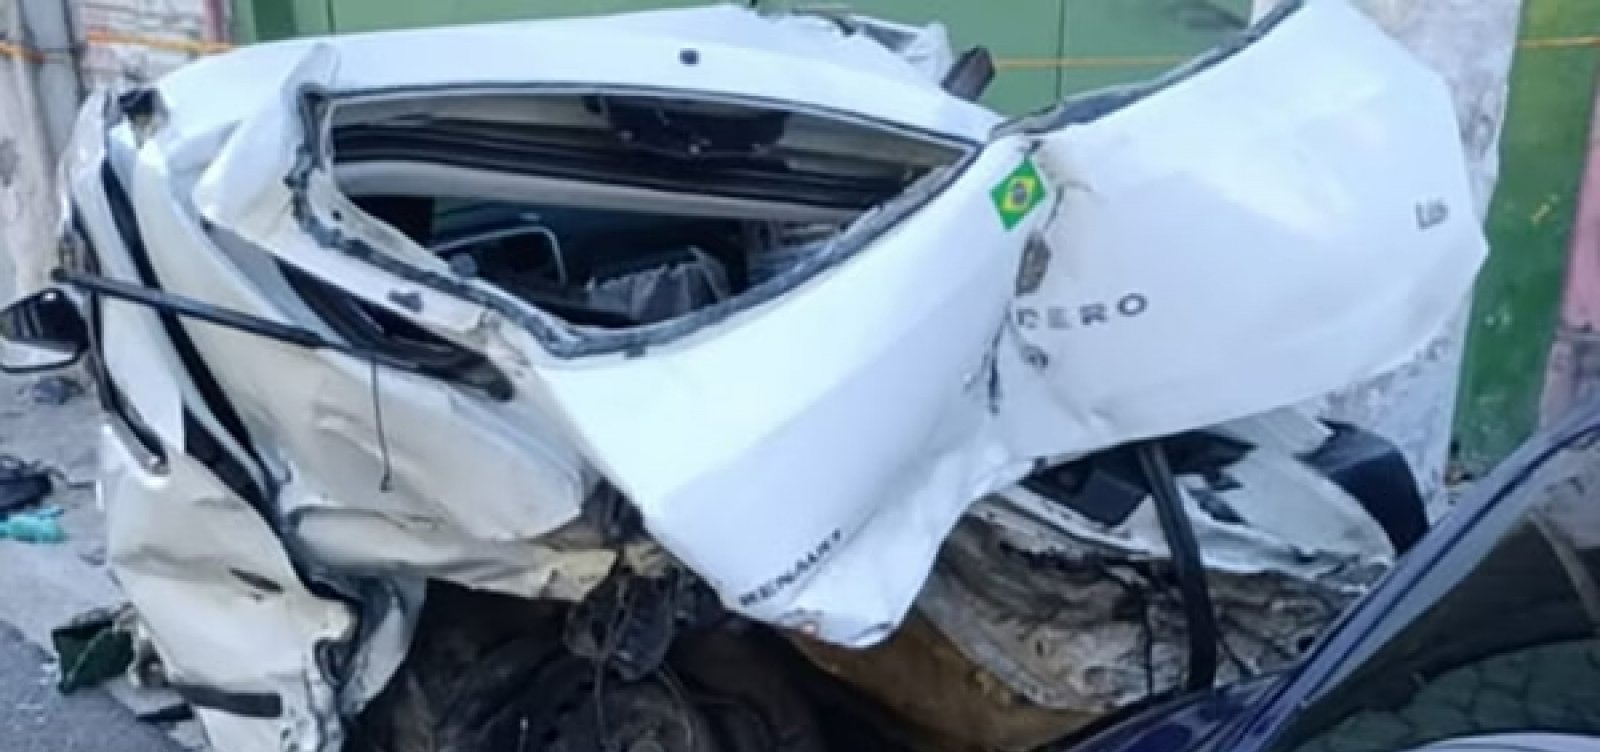 Amigo de motorista do Porsche que estava no veículo durante acidente volta a ser internado após complicações